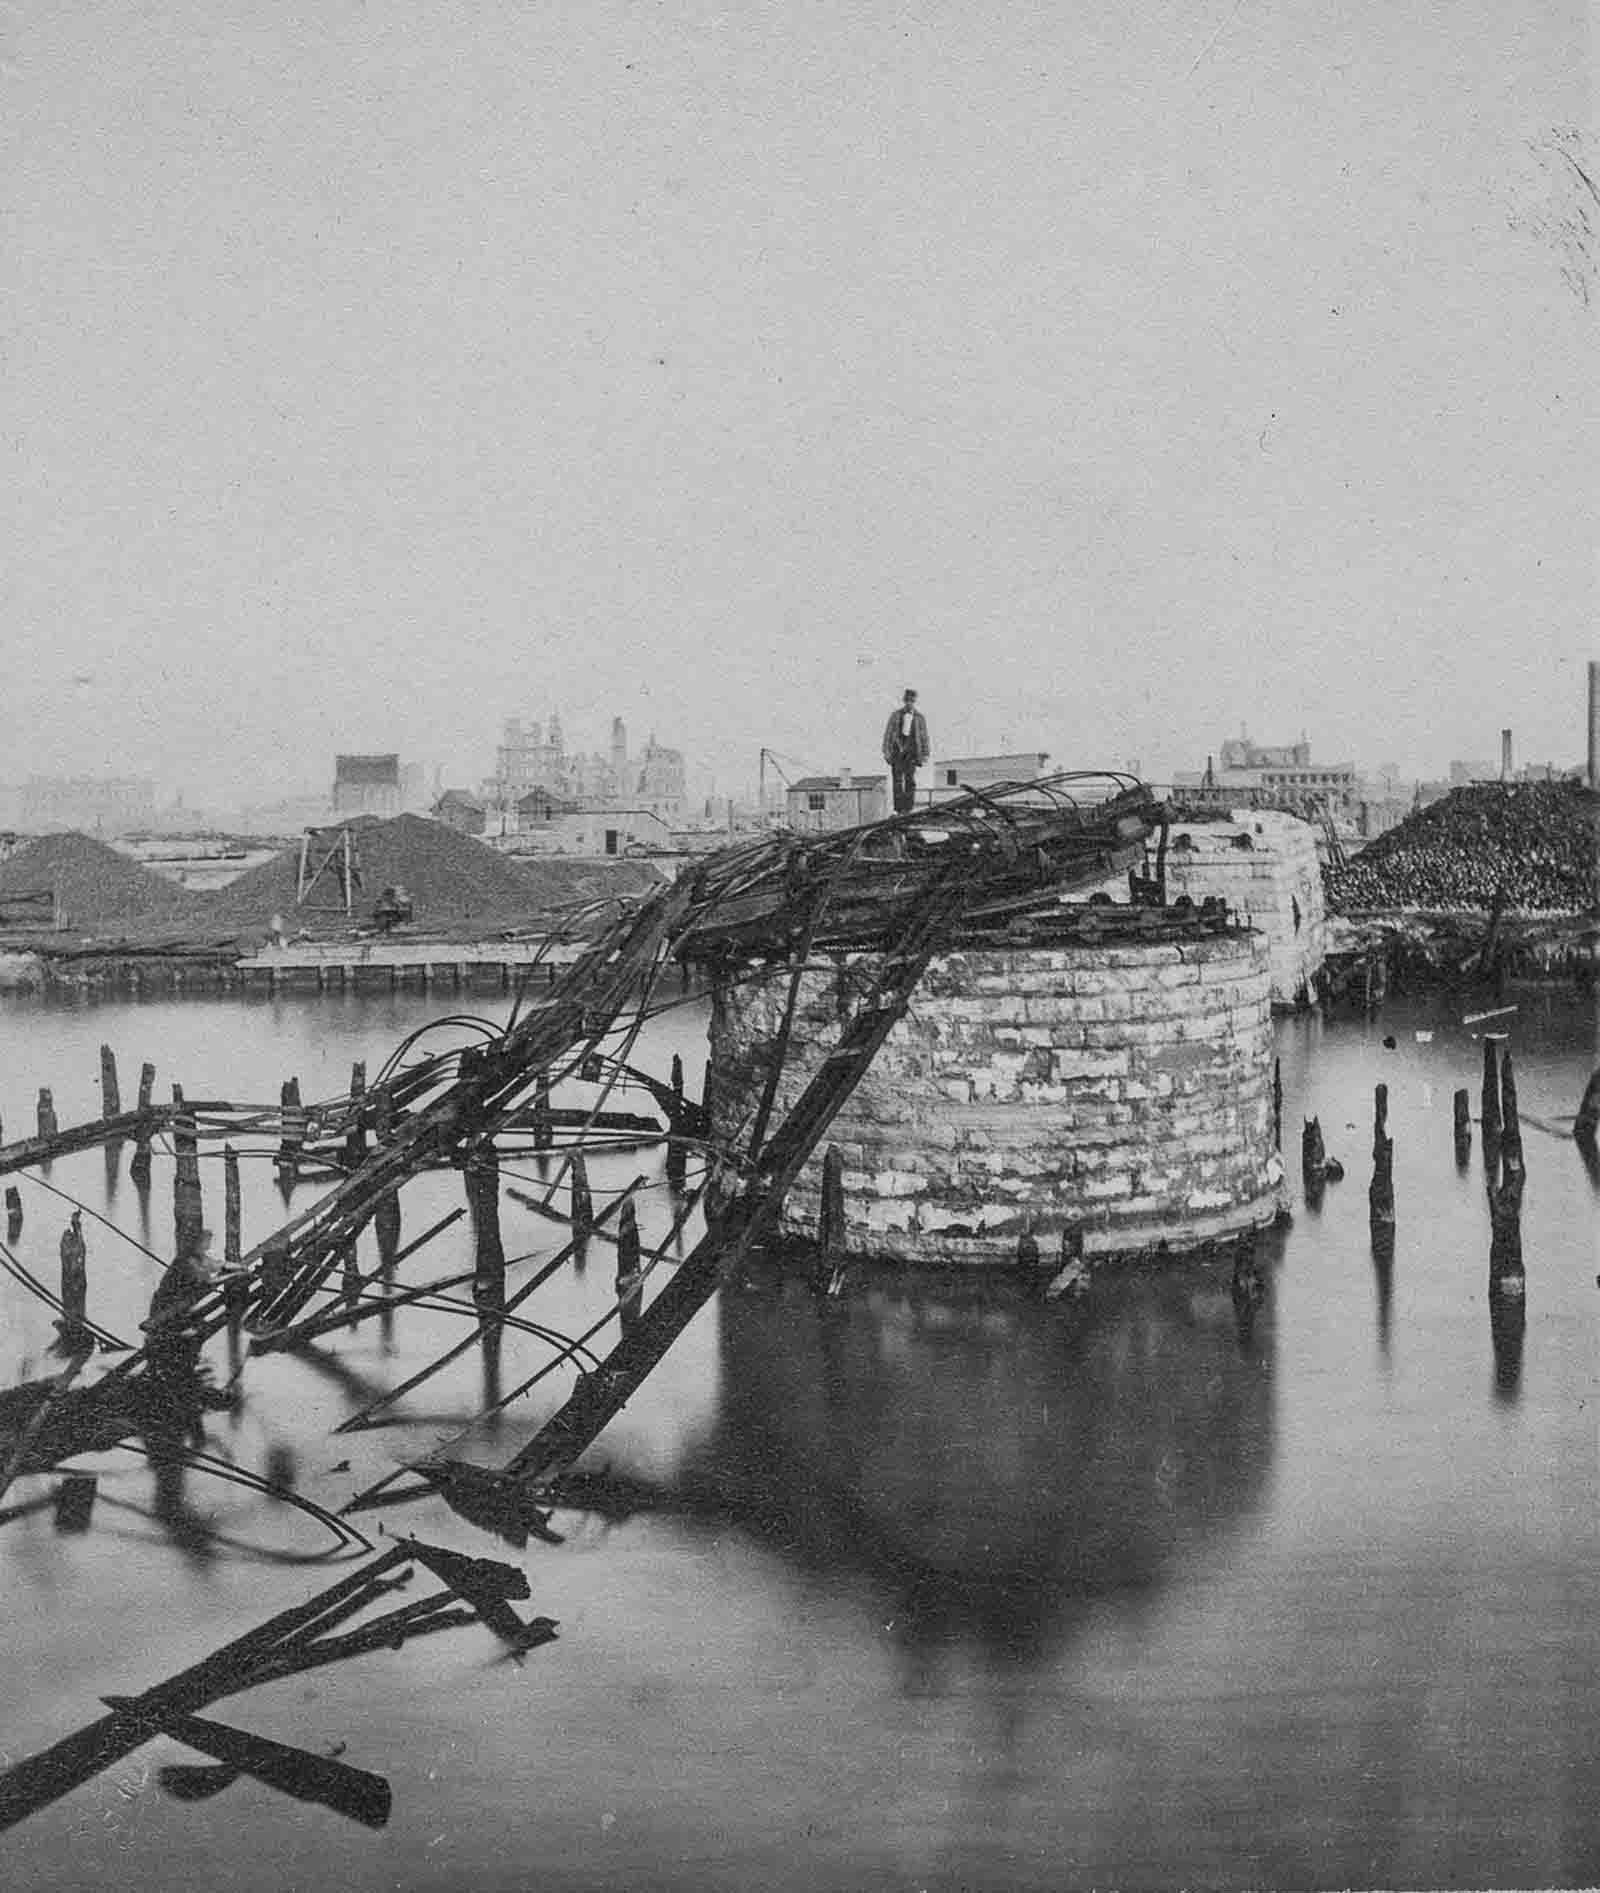 A man stands on the remains of the Van Buren Street Bridge.